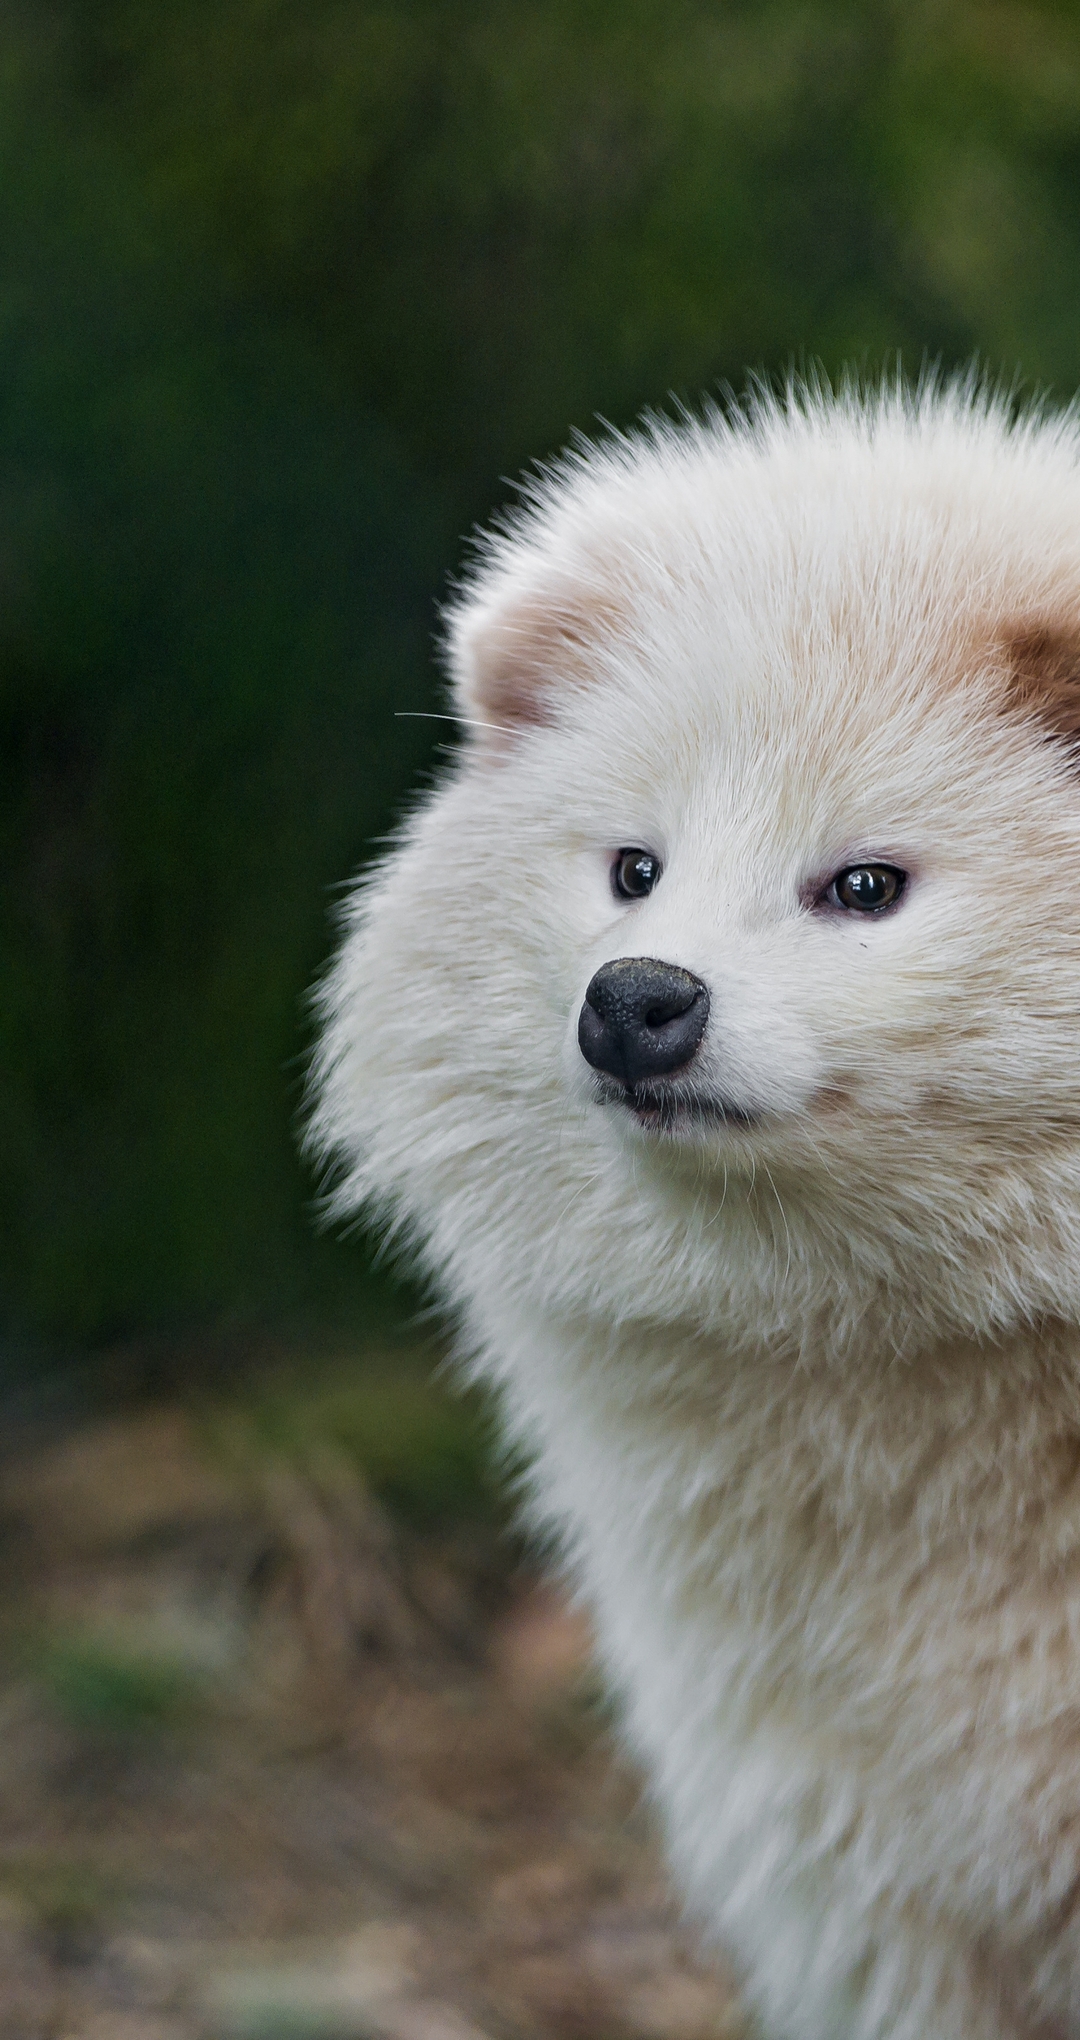 Картинка: Енотовидная, собака, хищник, всеядный, белый, пушистый, нос, ушки